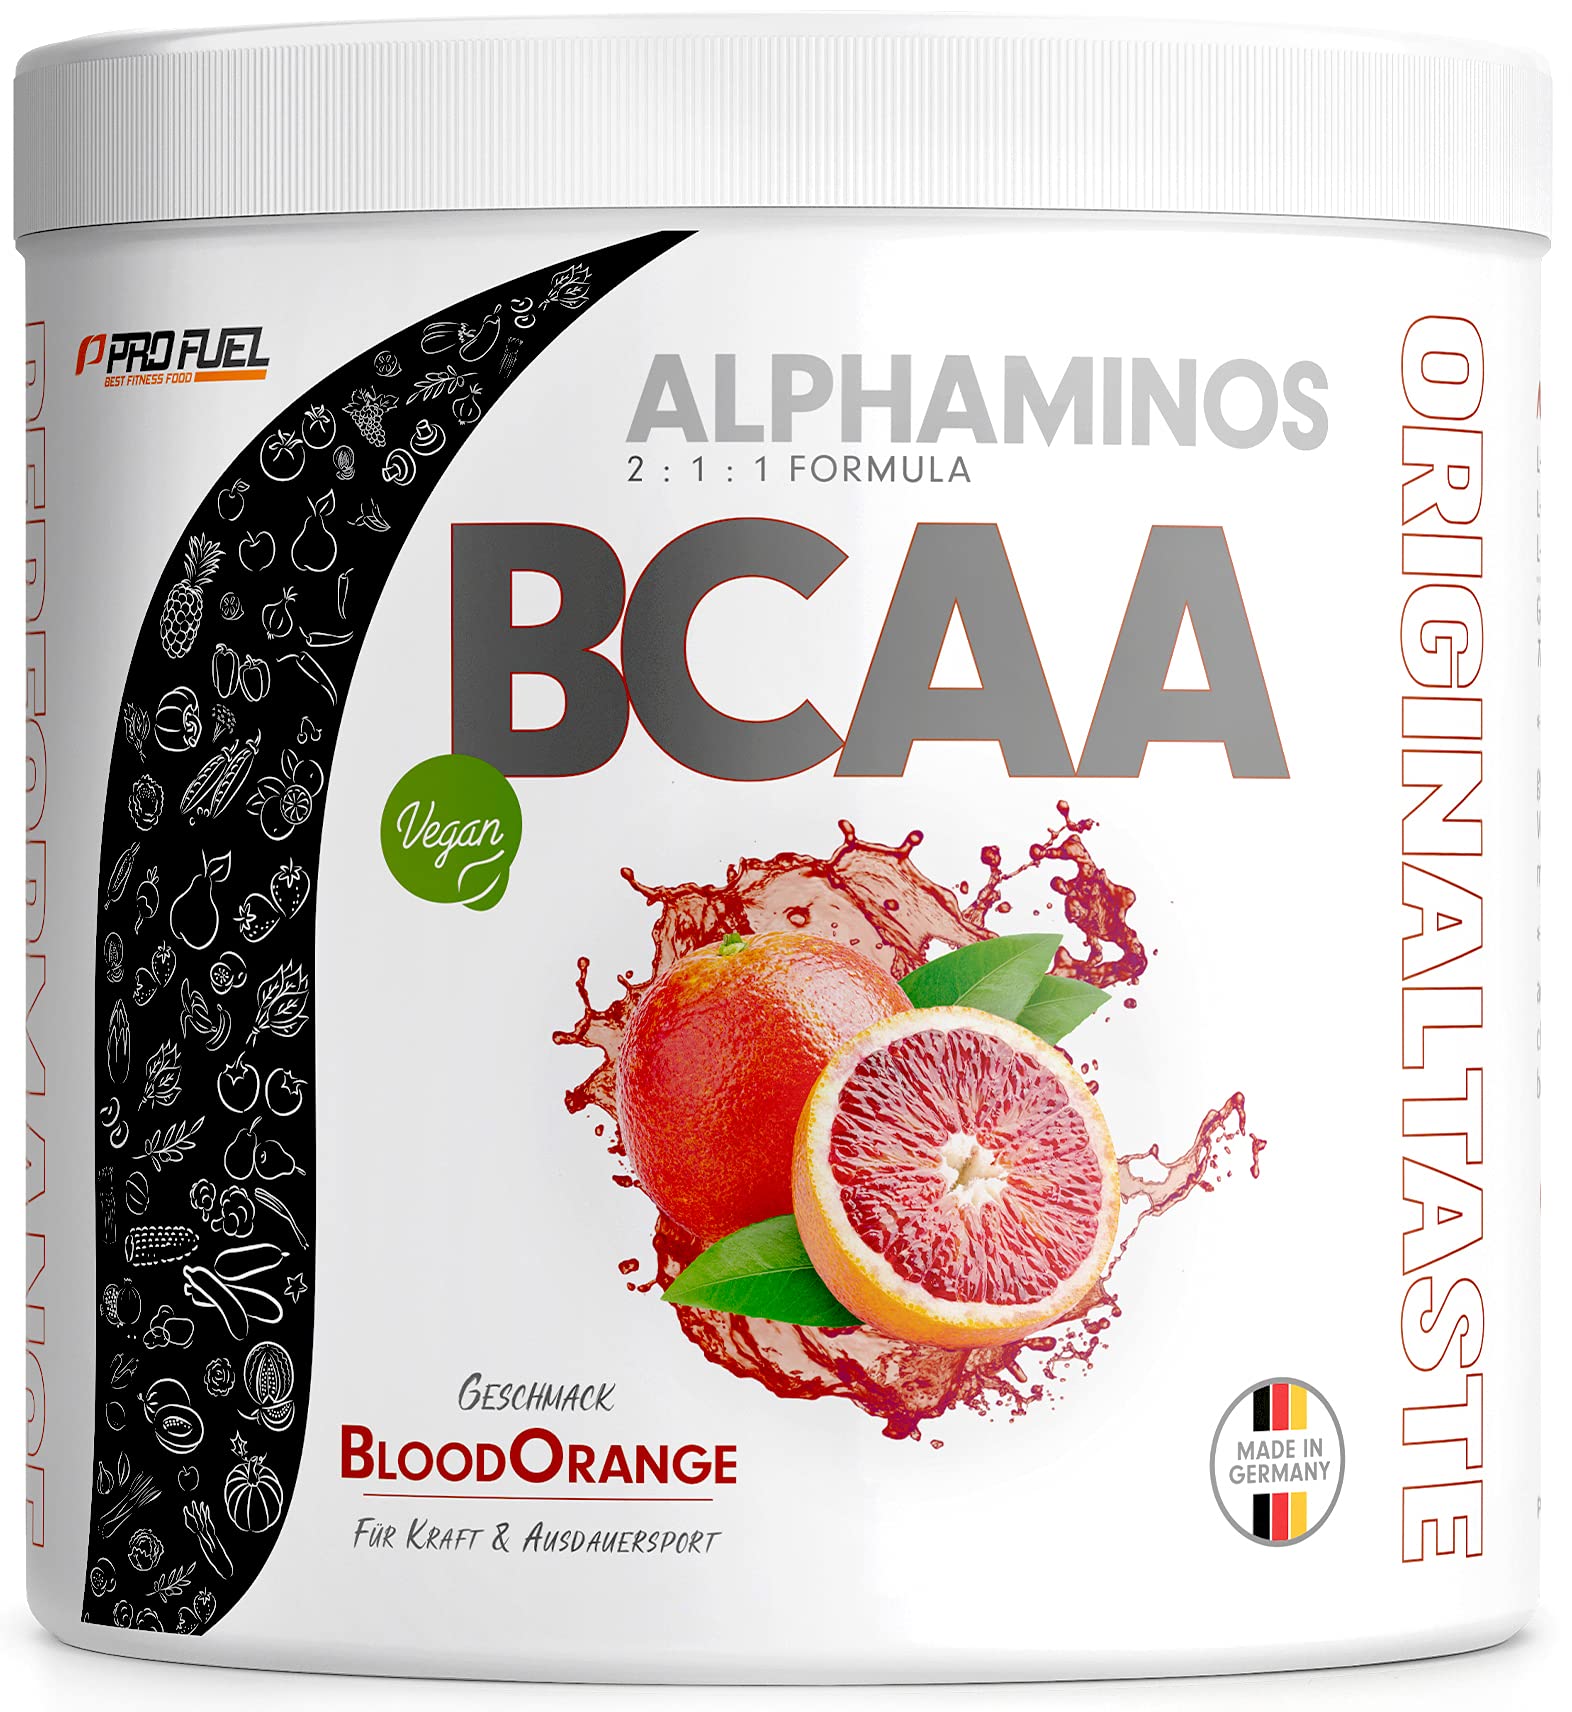 BCAA Pulver 300g Blutorange, TESTSIEGER Alphaminos BCAA 2:1:1 Drink, unfassbar leckerer Geschmack, Essentielle Aminosäuren Leucin, Isoleucin & Valin, 100% vegan - Top Löslichkeit - Laborgeprüft